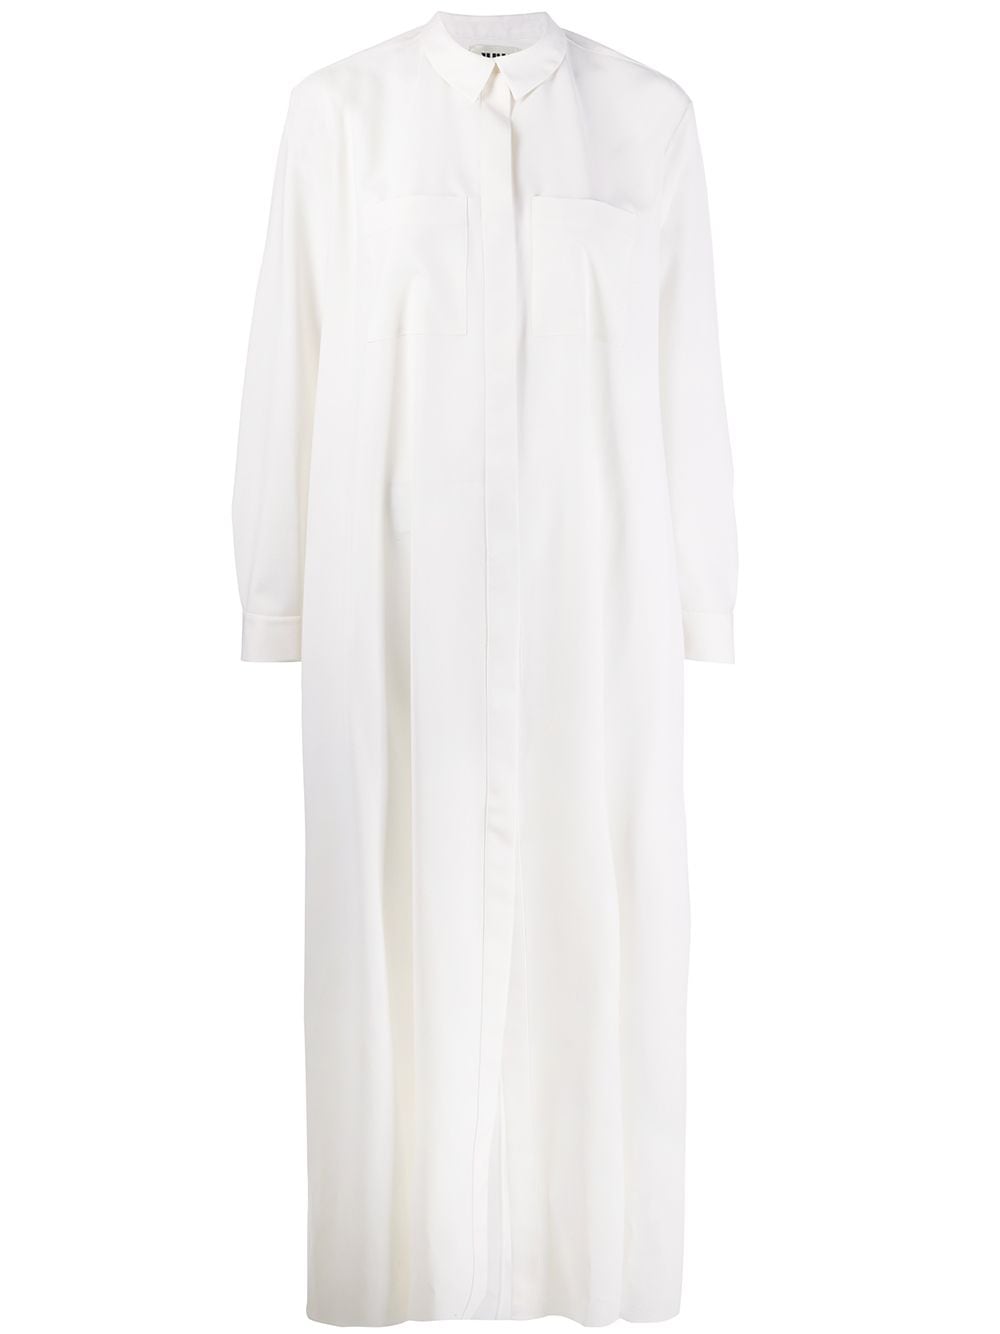 Maison Rabih Kayrouz chest pocket shirt dress - White von Maison Rabih Kayrouz